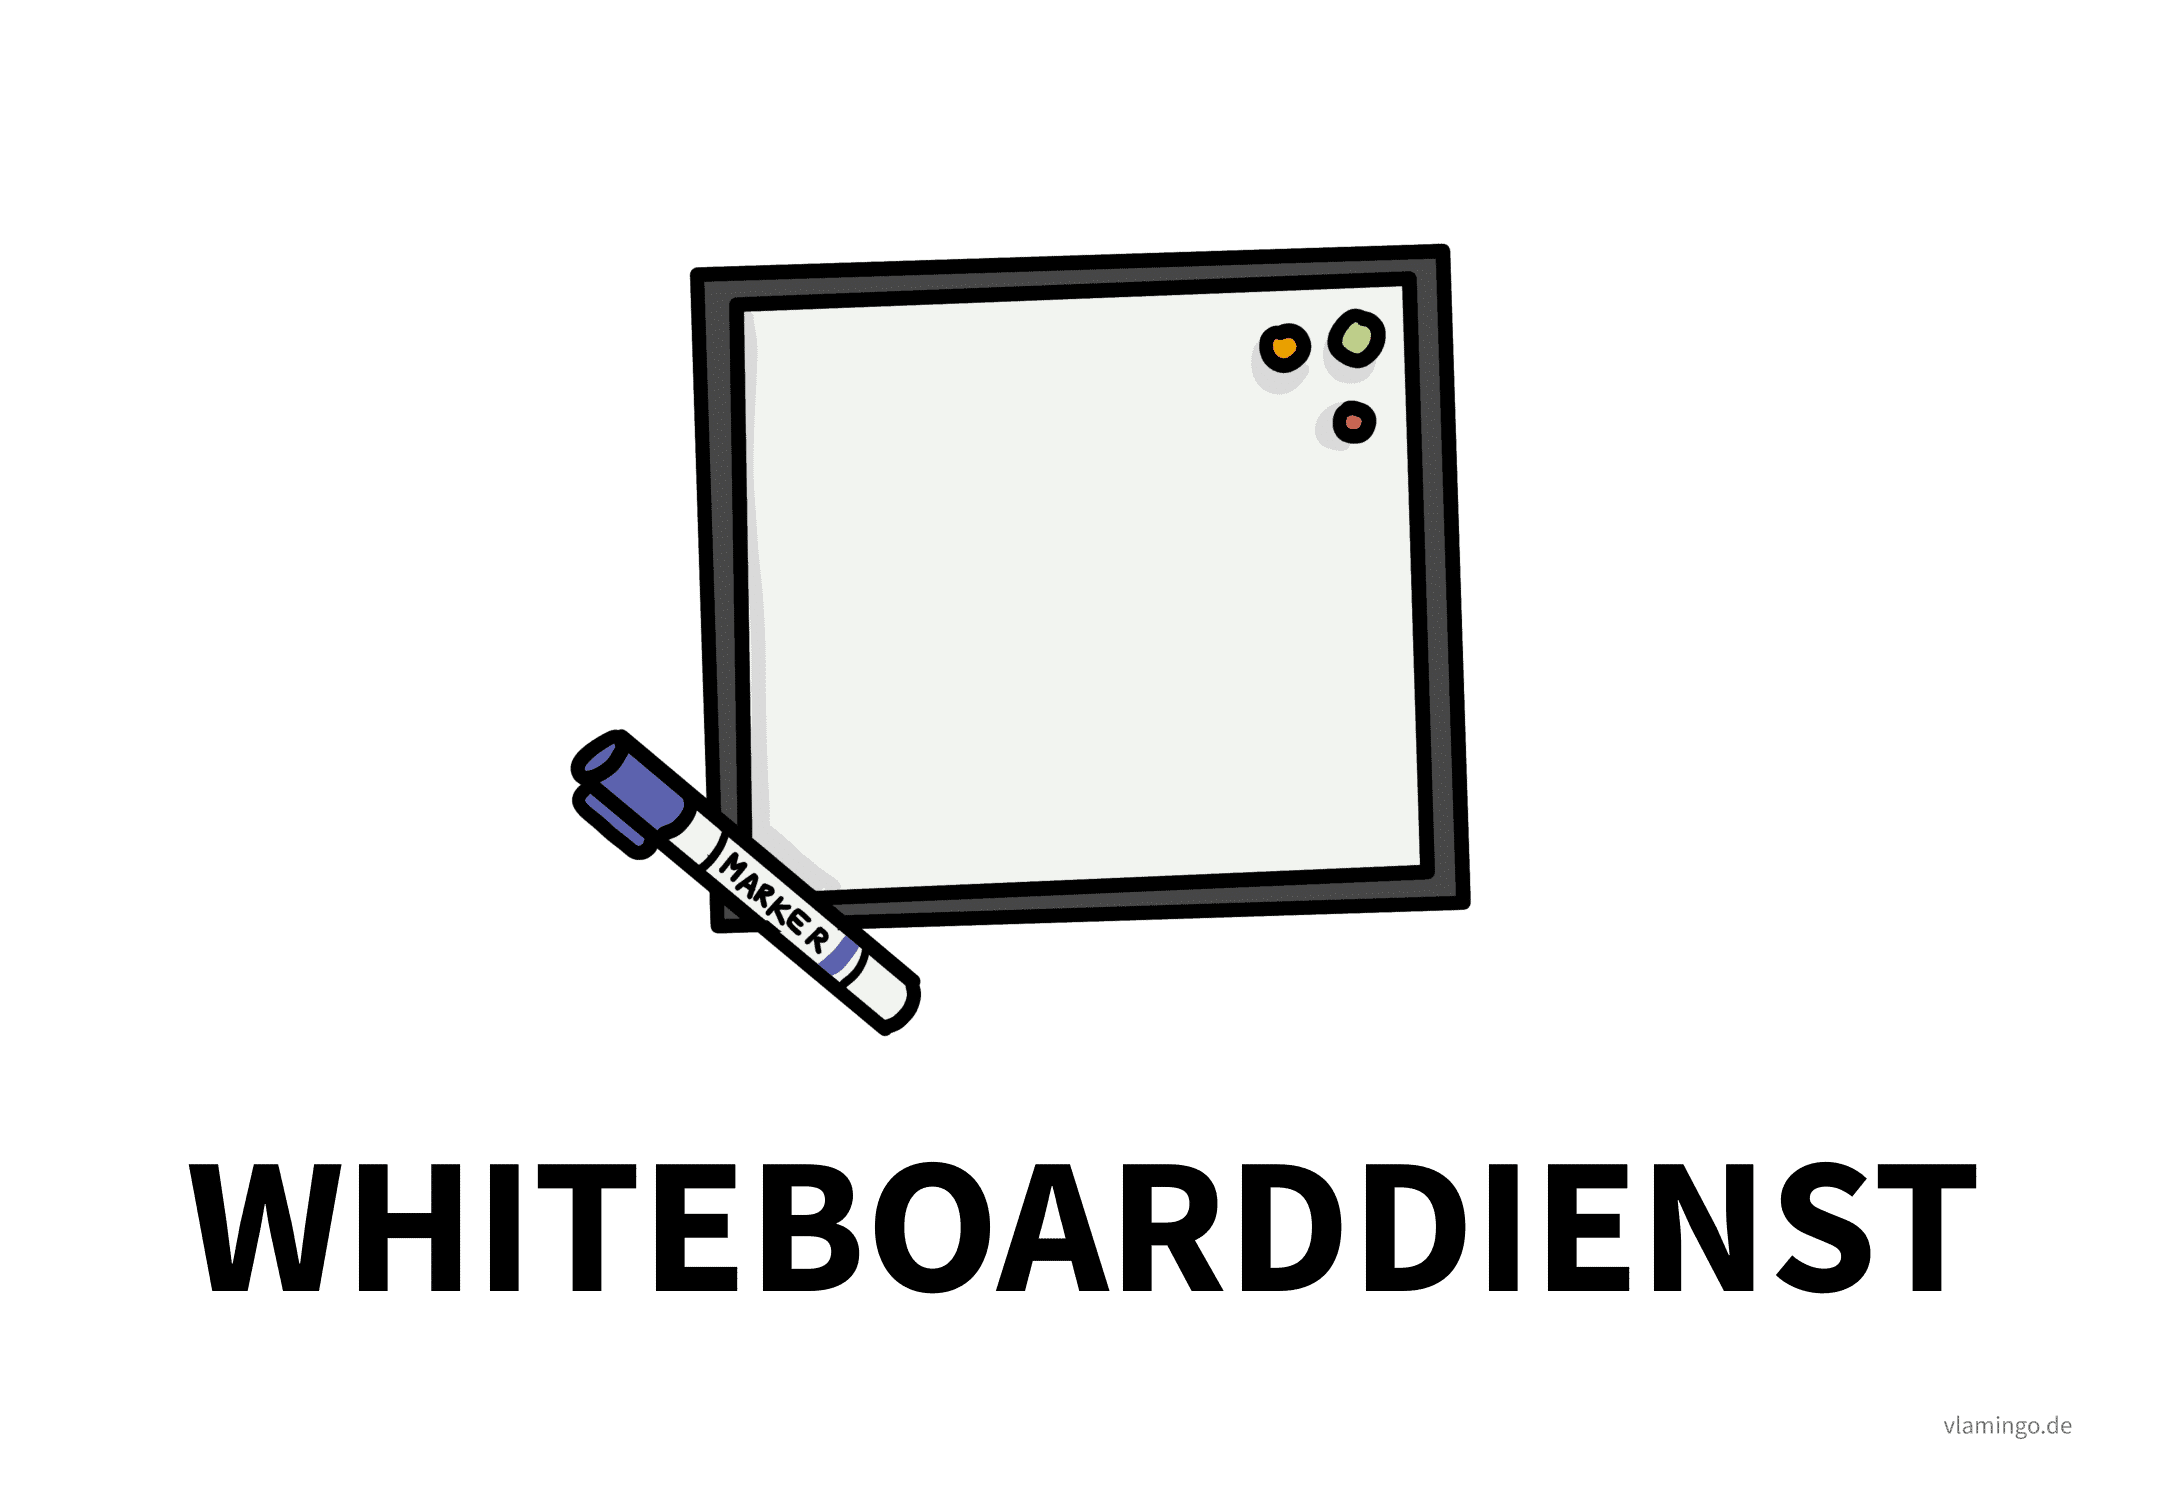 Whiteboarddienst